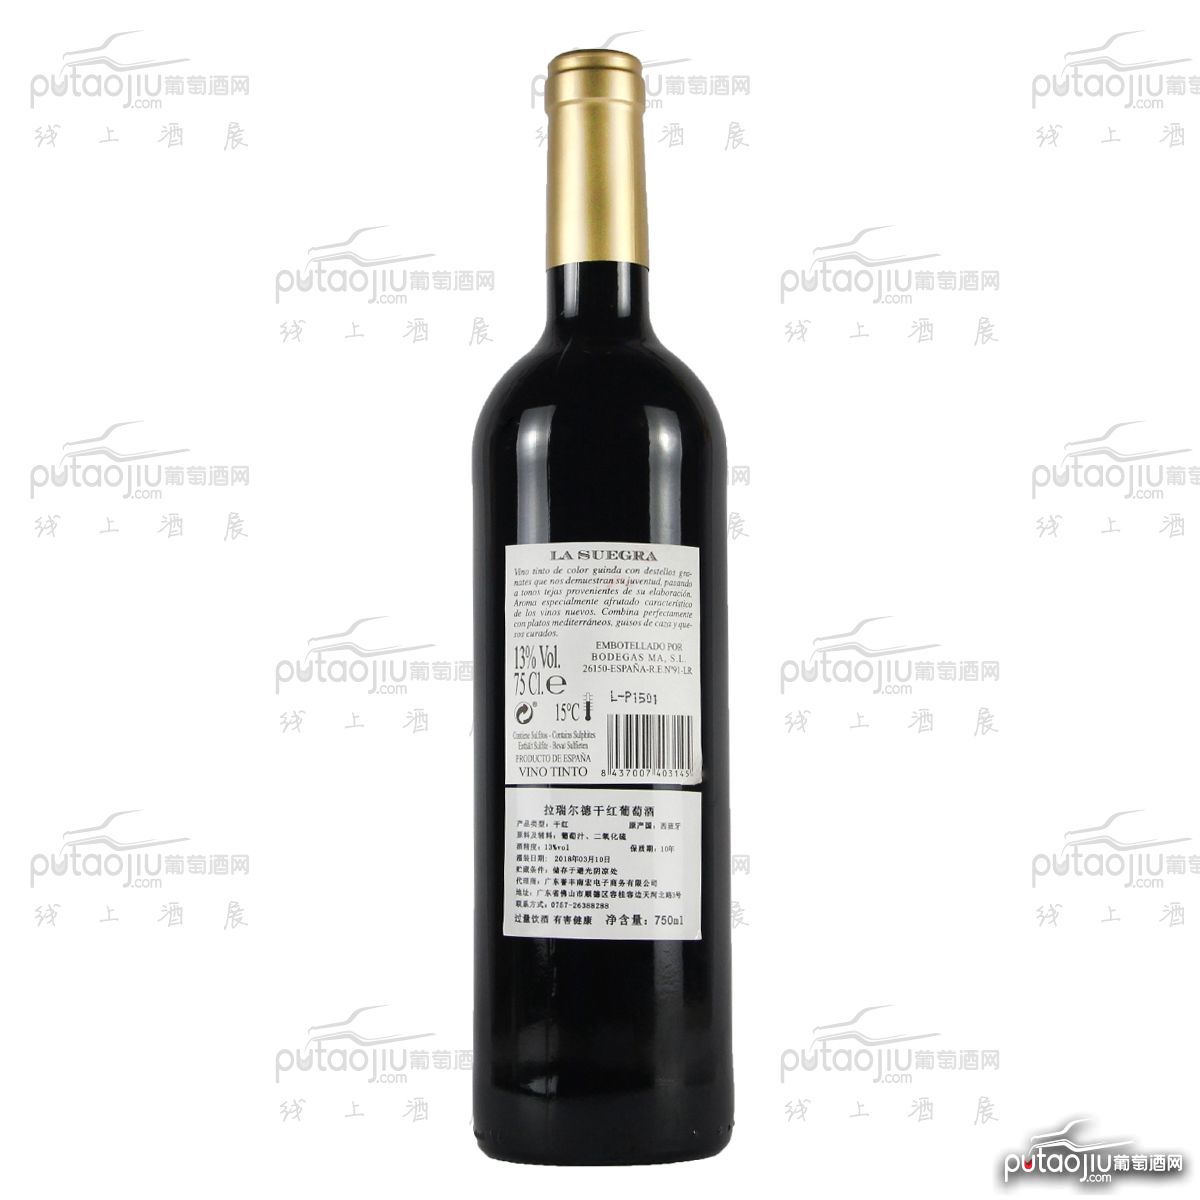 西班牙里奥哈侯爵比萨酒庄添普兰尼洛拉瑞尔德干红葡萄酒